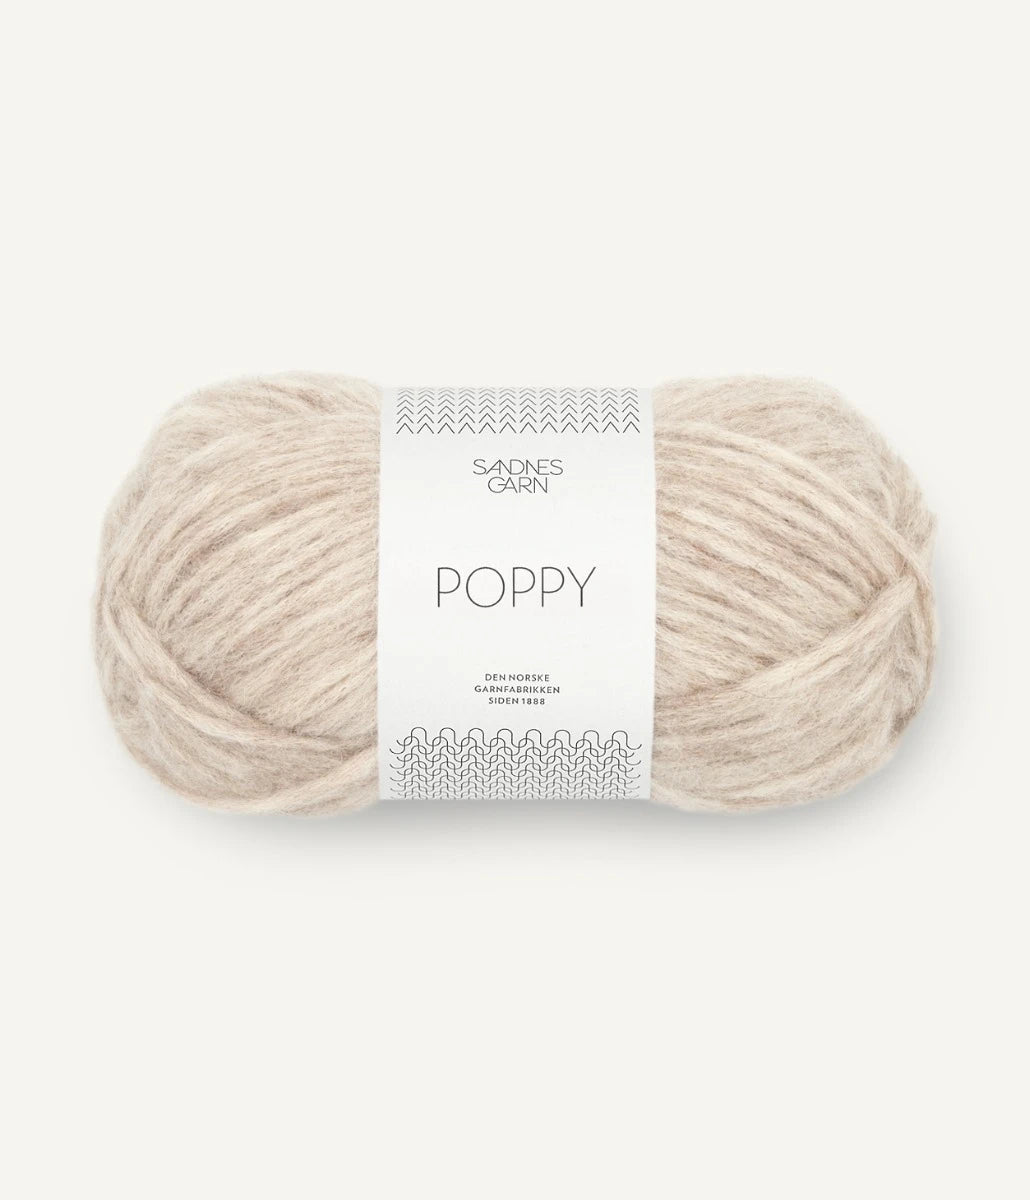 Kuvassa on Sandnes Garn Poppy -lanka (yarn) värissä Beigemelert.